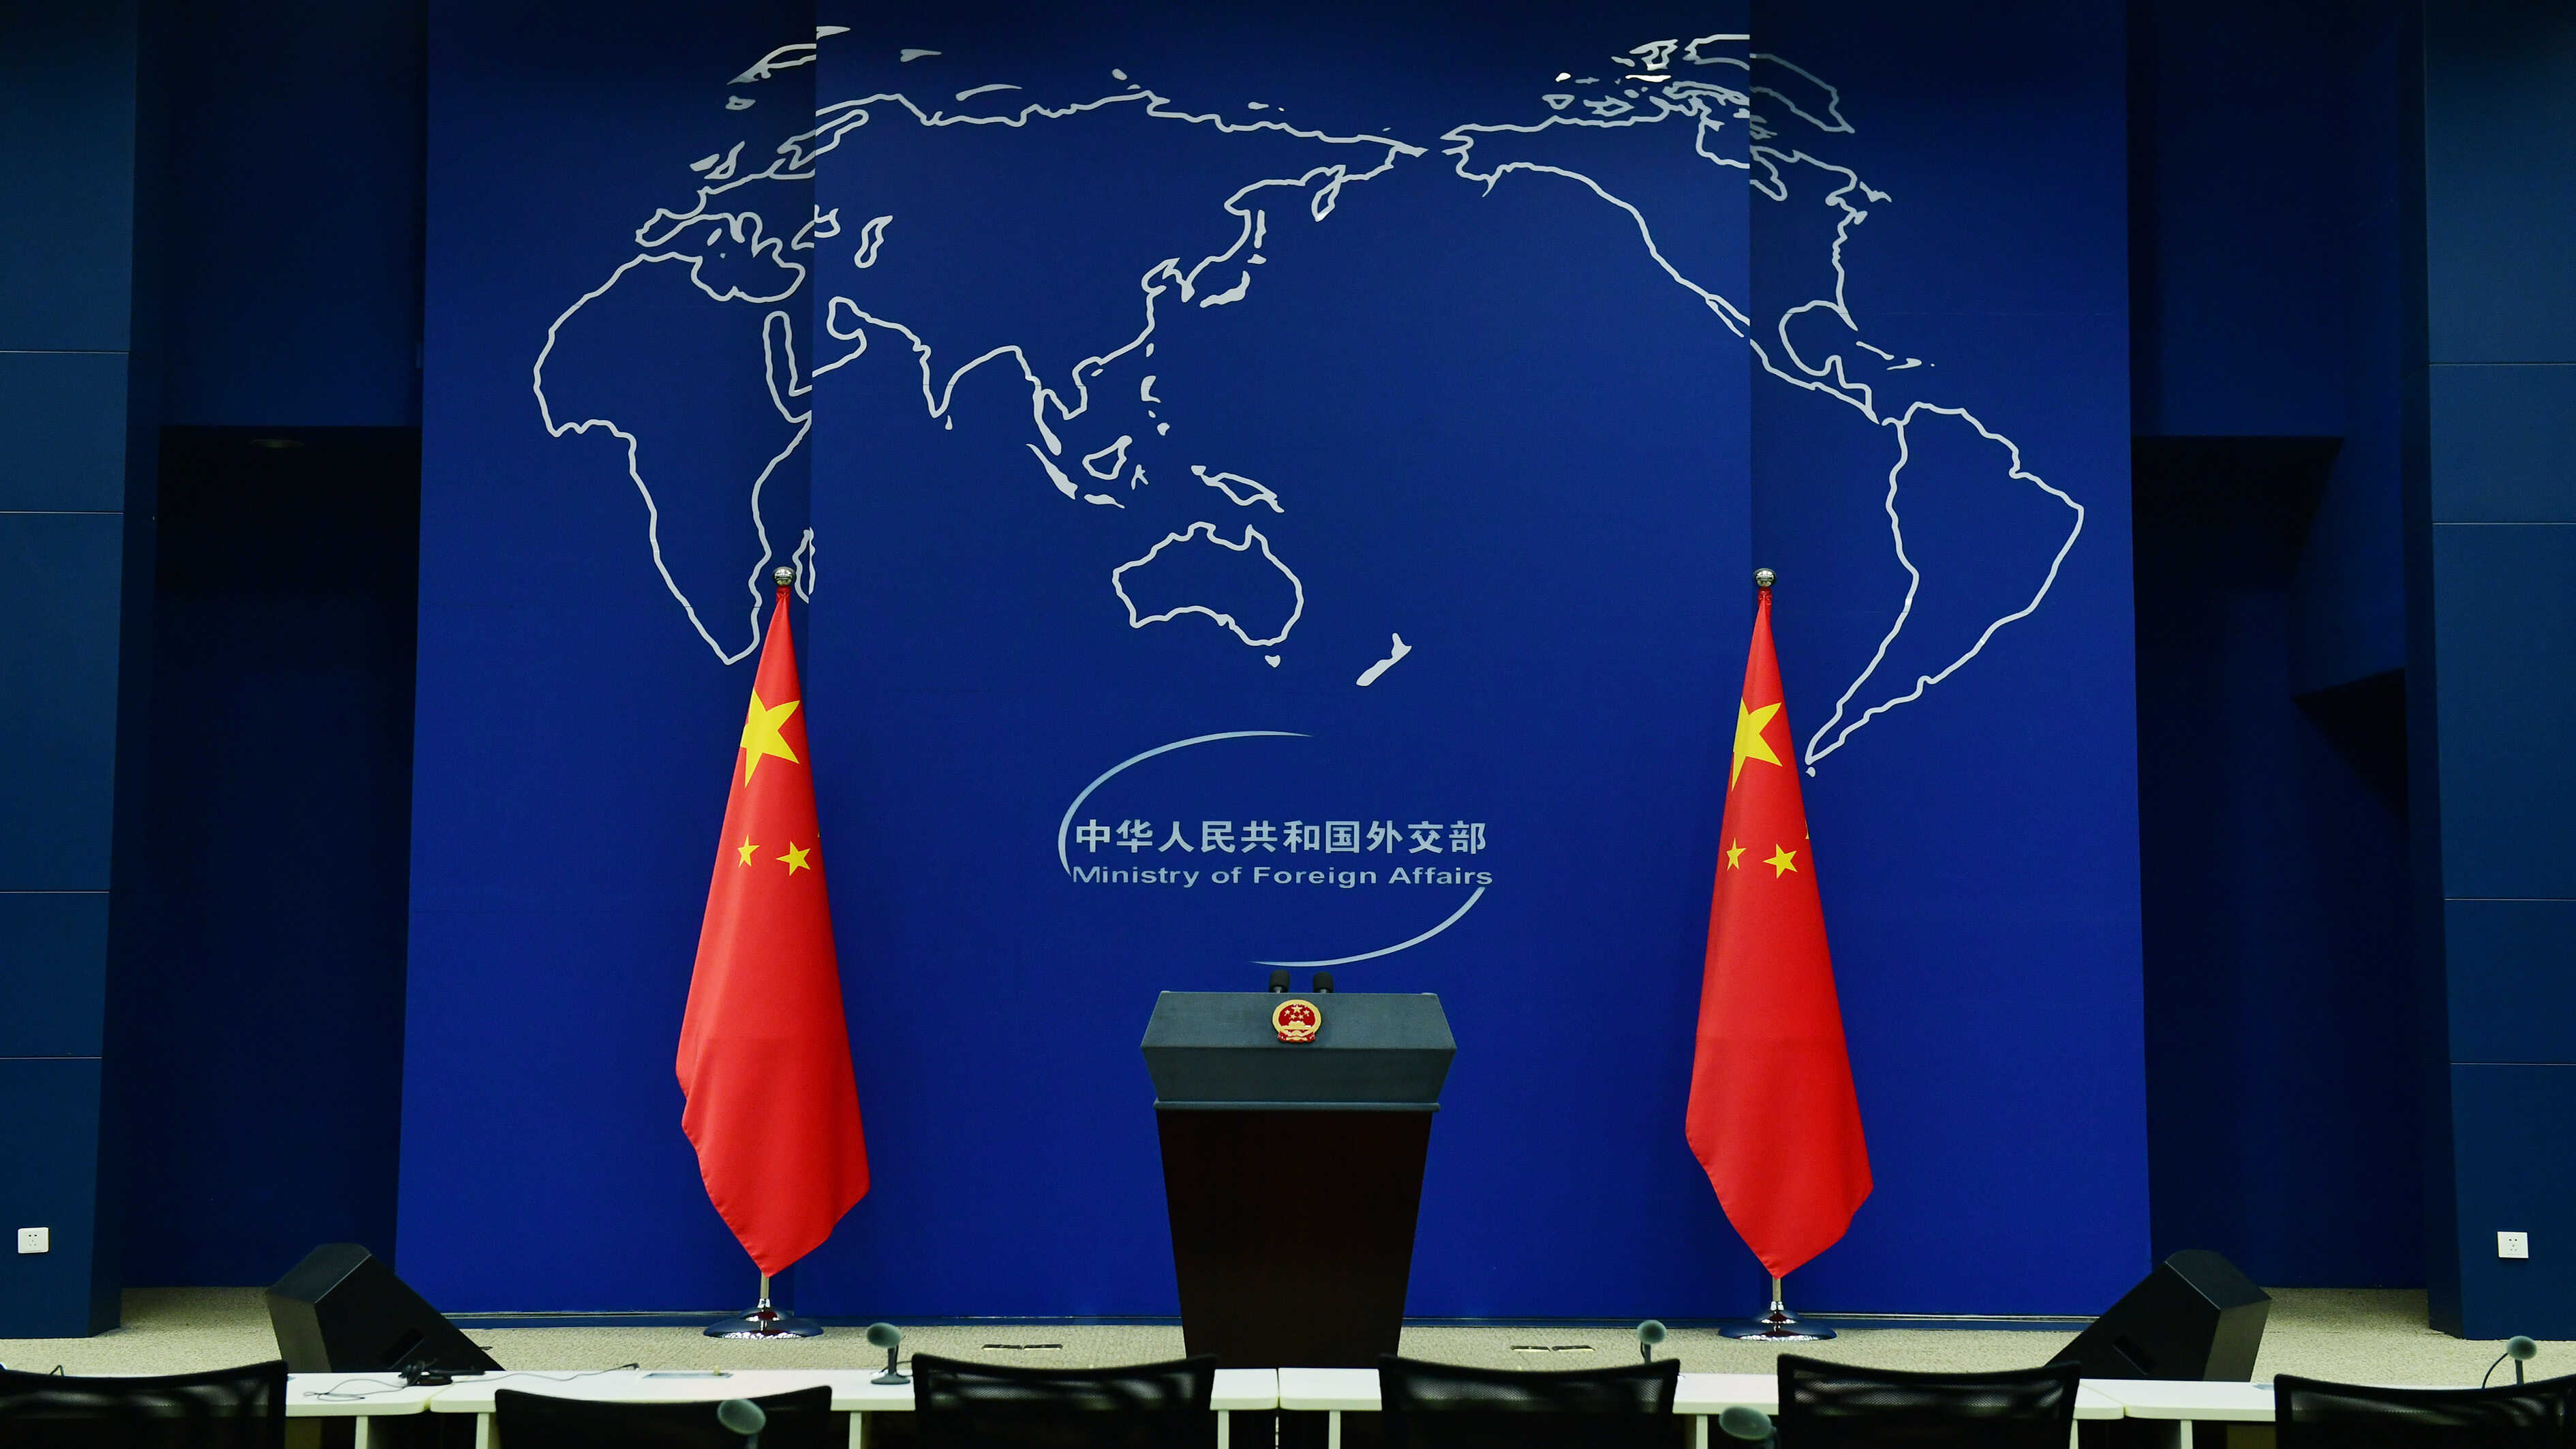 سخنگوی وزارت خارجه چین: دو کشور چین و پاکستان توانایی و عزم لازم برای مجازات تروریستها را دارندا